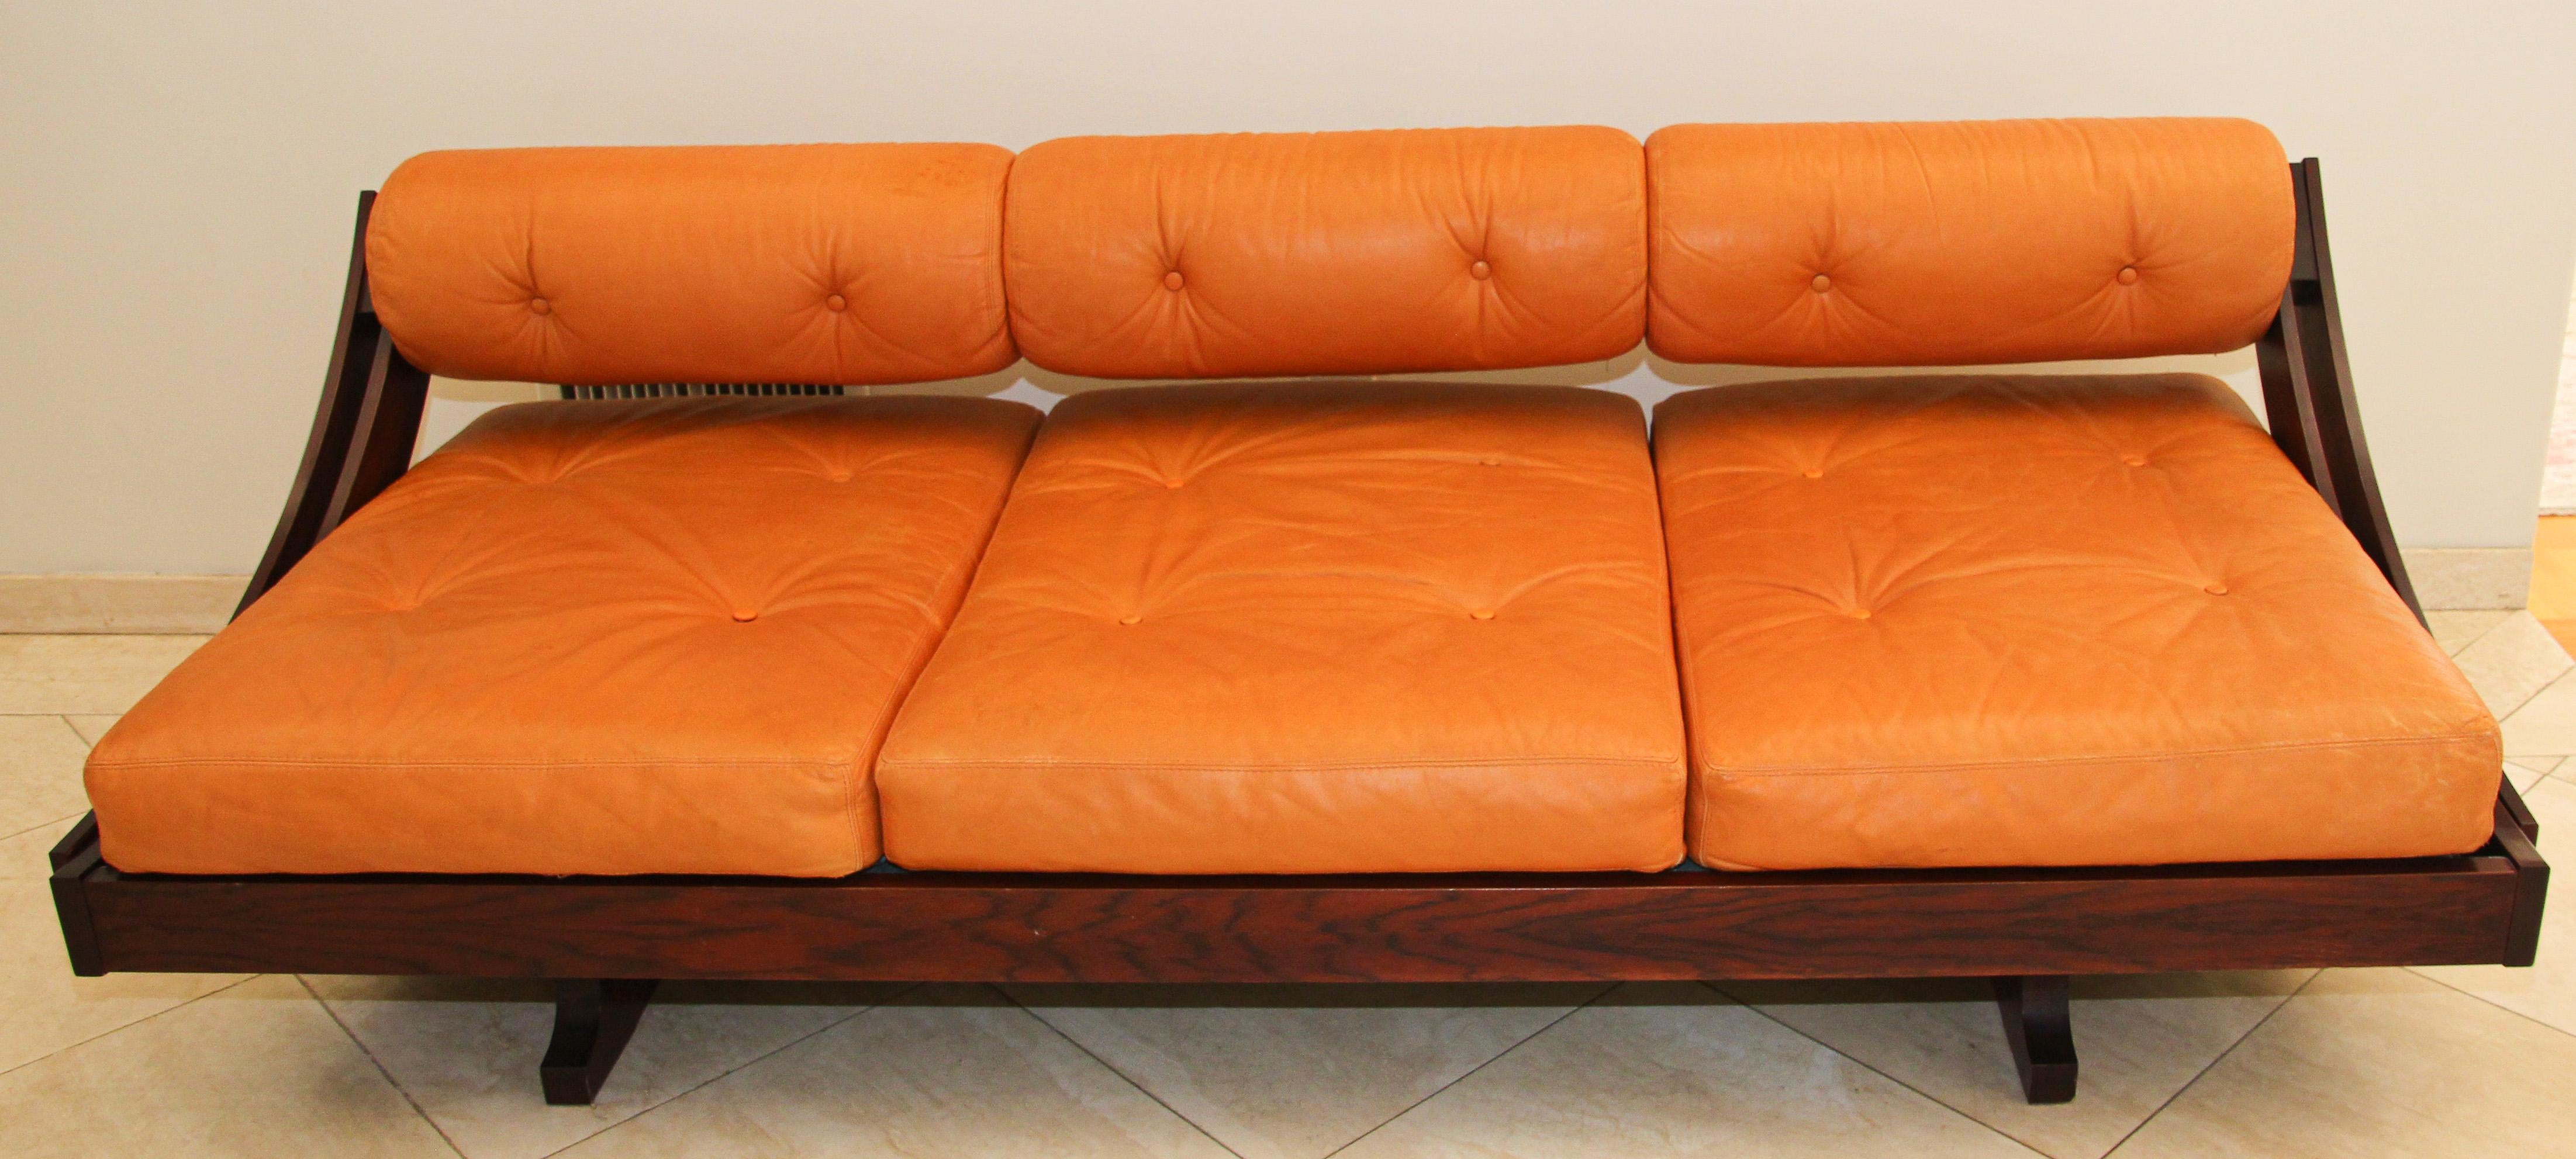 Gianni Songia GS195 sofá-cama de piel para Sormani, Italia, 1963
Este sofá cama de tres plazas fue diseñado por Gianni Songia para Sormani, Italia, en 1963.
Model GS-195 con cojines de cuero.
Raro sofá cama italiano diseñado por Gianni Songia